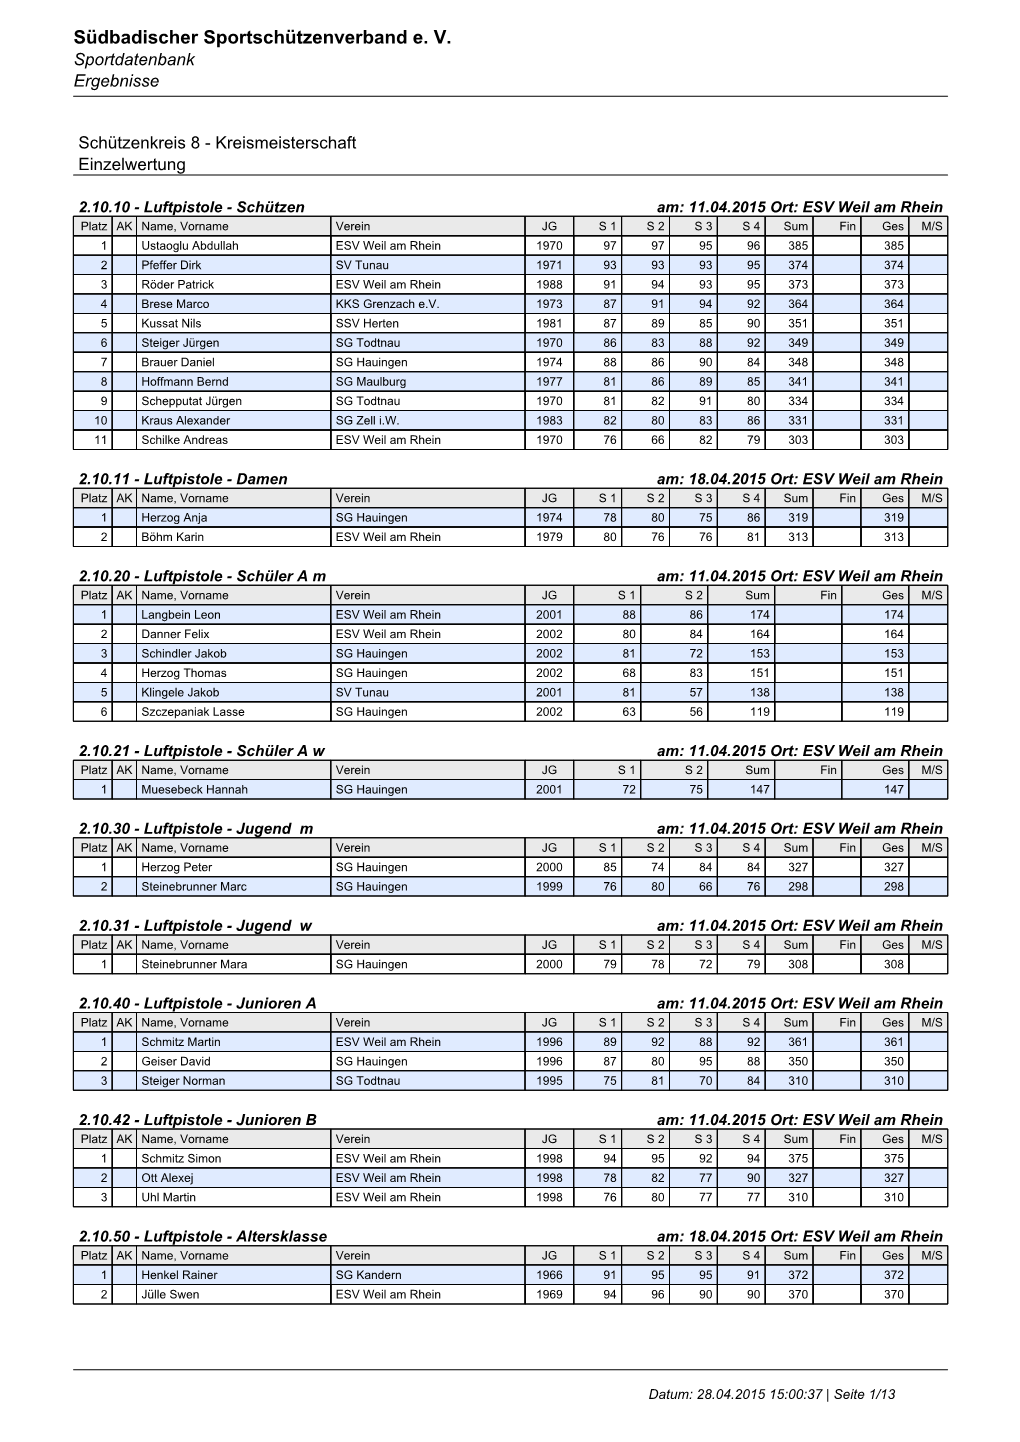 Südbadischer Sportschützenverband E. V. Sportdatenbank Ergebnisse